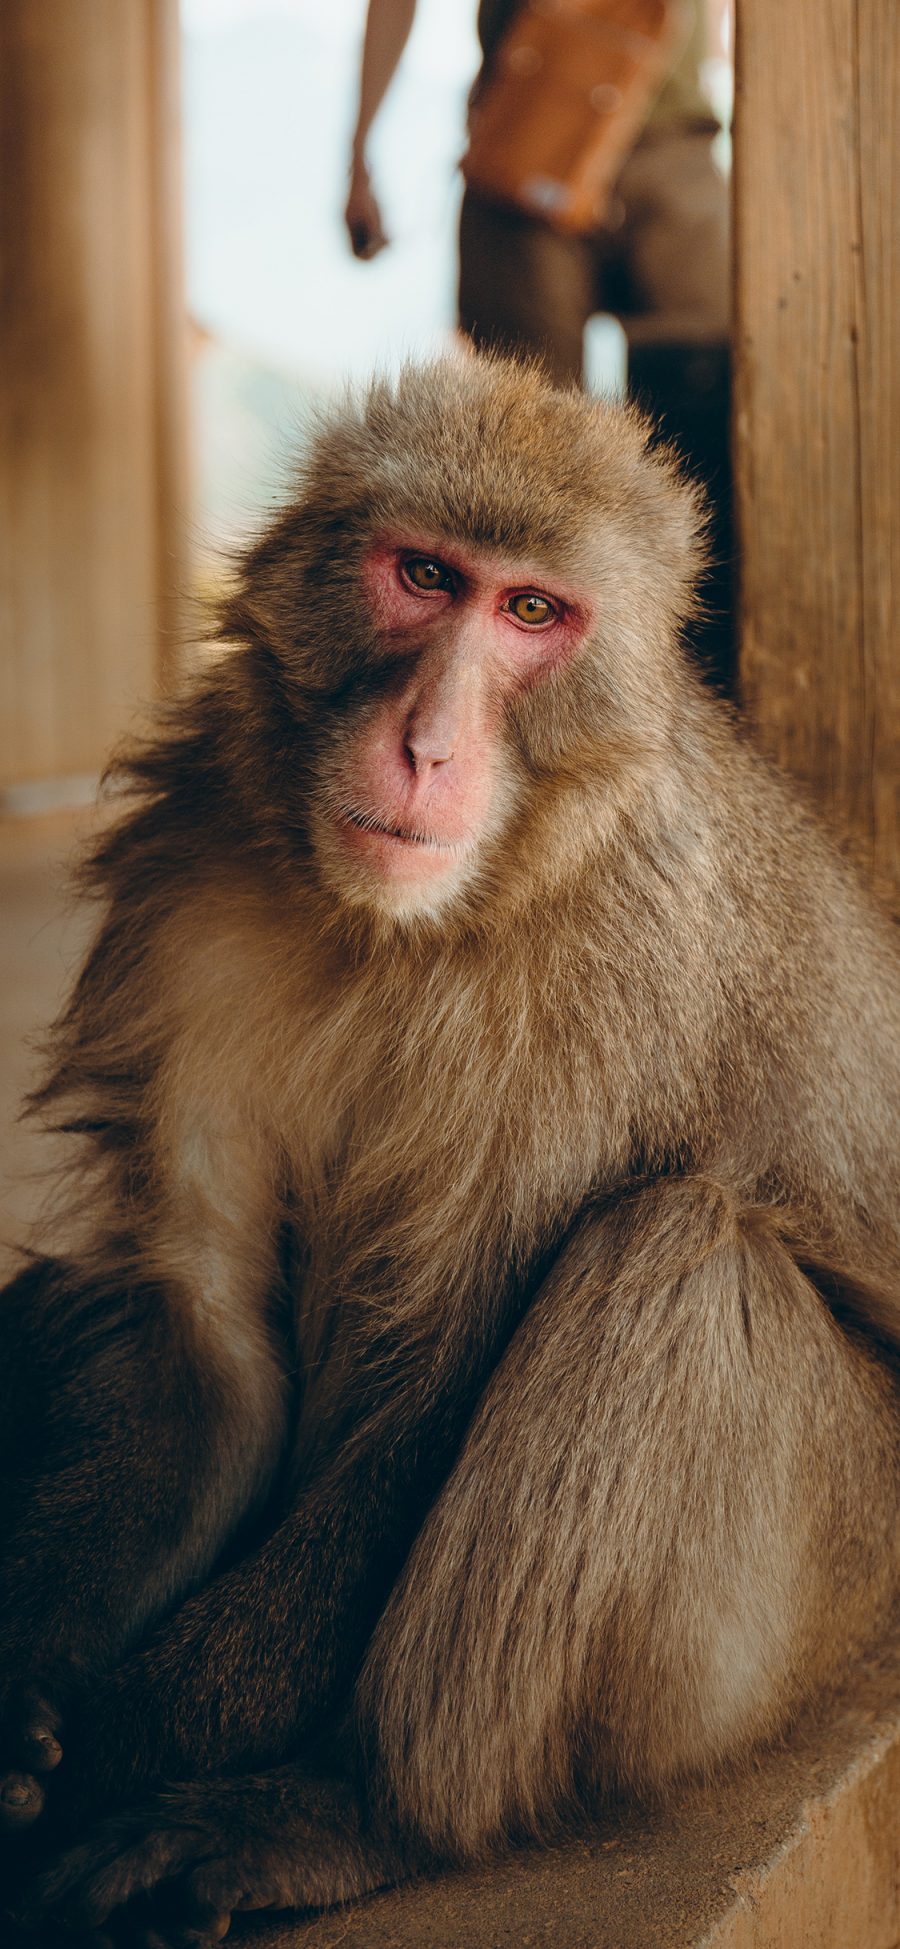 [2436×1125]猴子 猿类 长毛 苹果手机壁纸图片